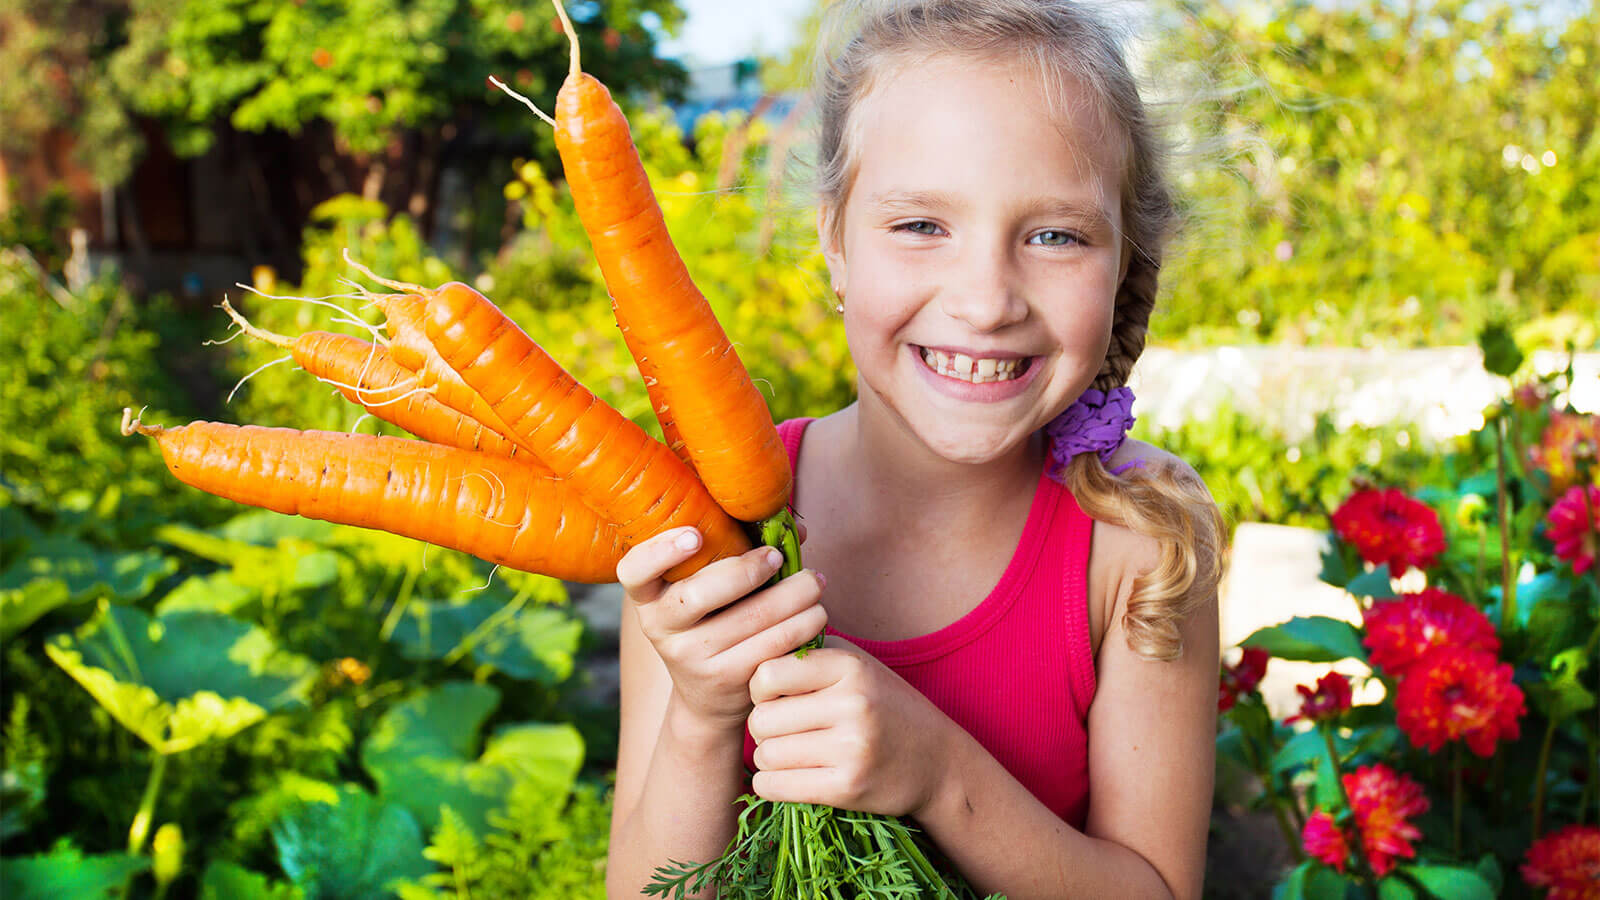 Come far apprezzare verdura e frutta ai bambini